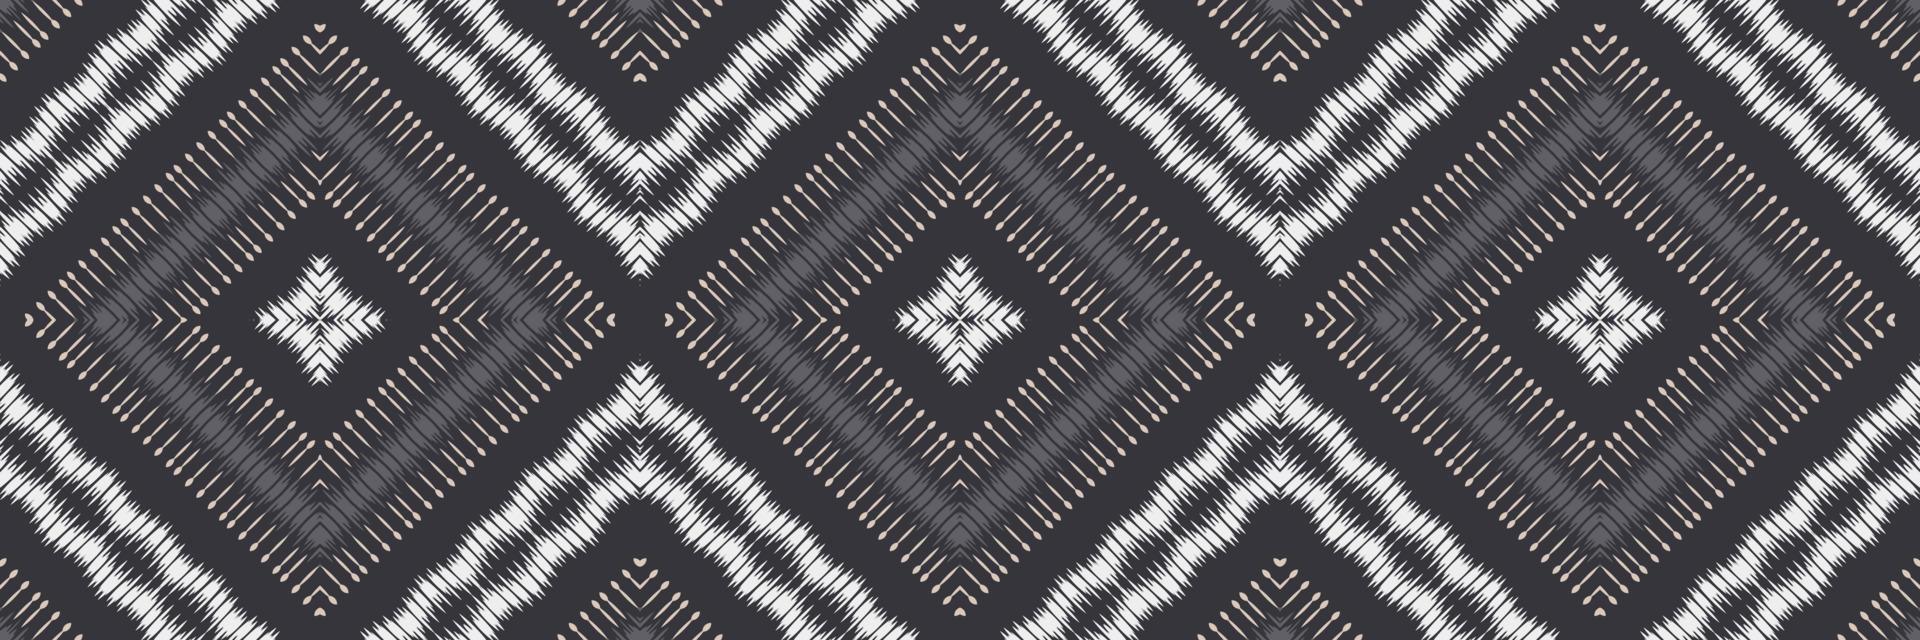 batik têxtil ikat damasco sem costura padrão design de vetor digital para impressão saree kurti borneo tecido borda escova símbolos designer de amostras